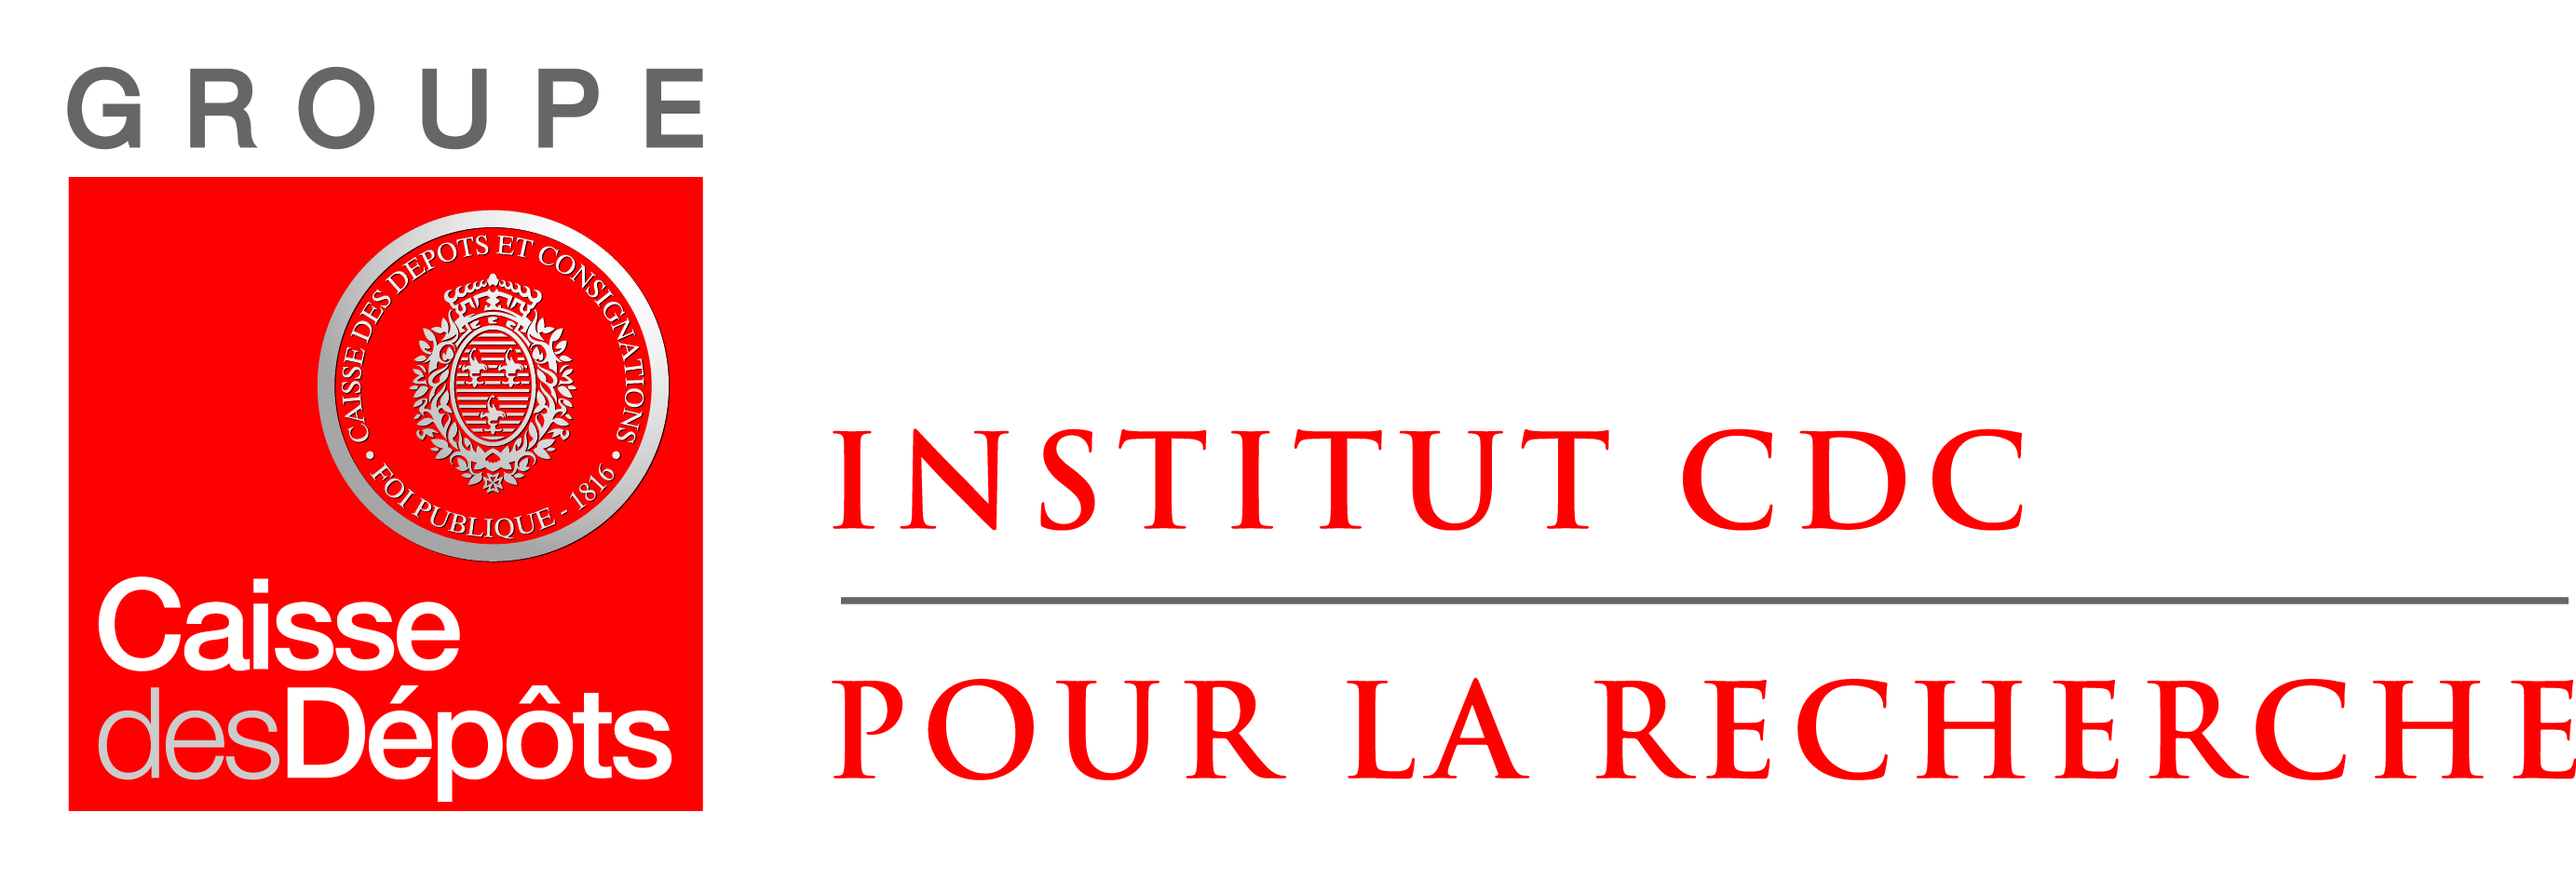 2-Logo Institut CDC quadri.jpg